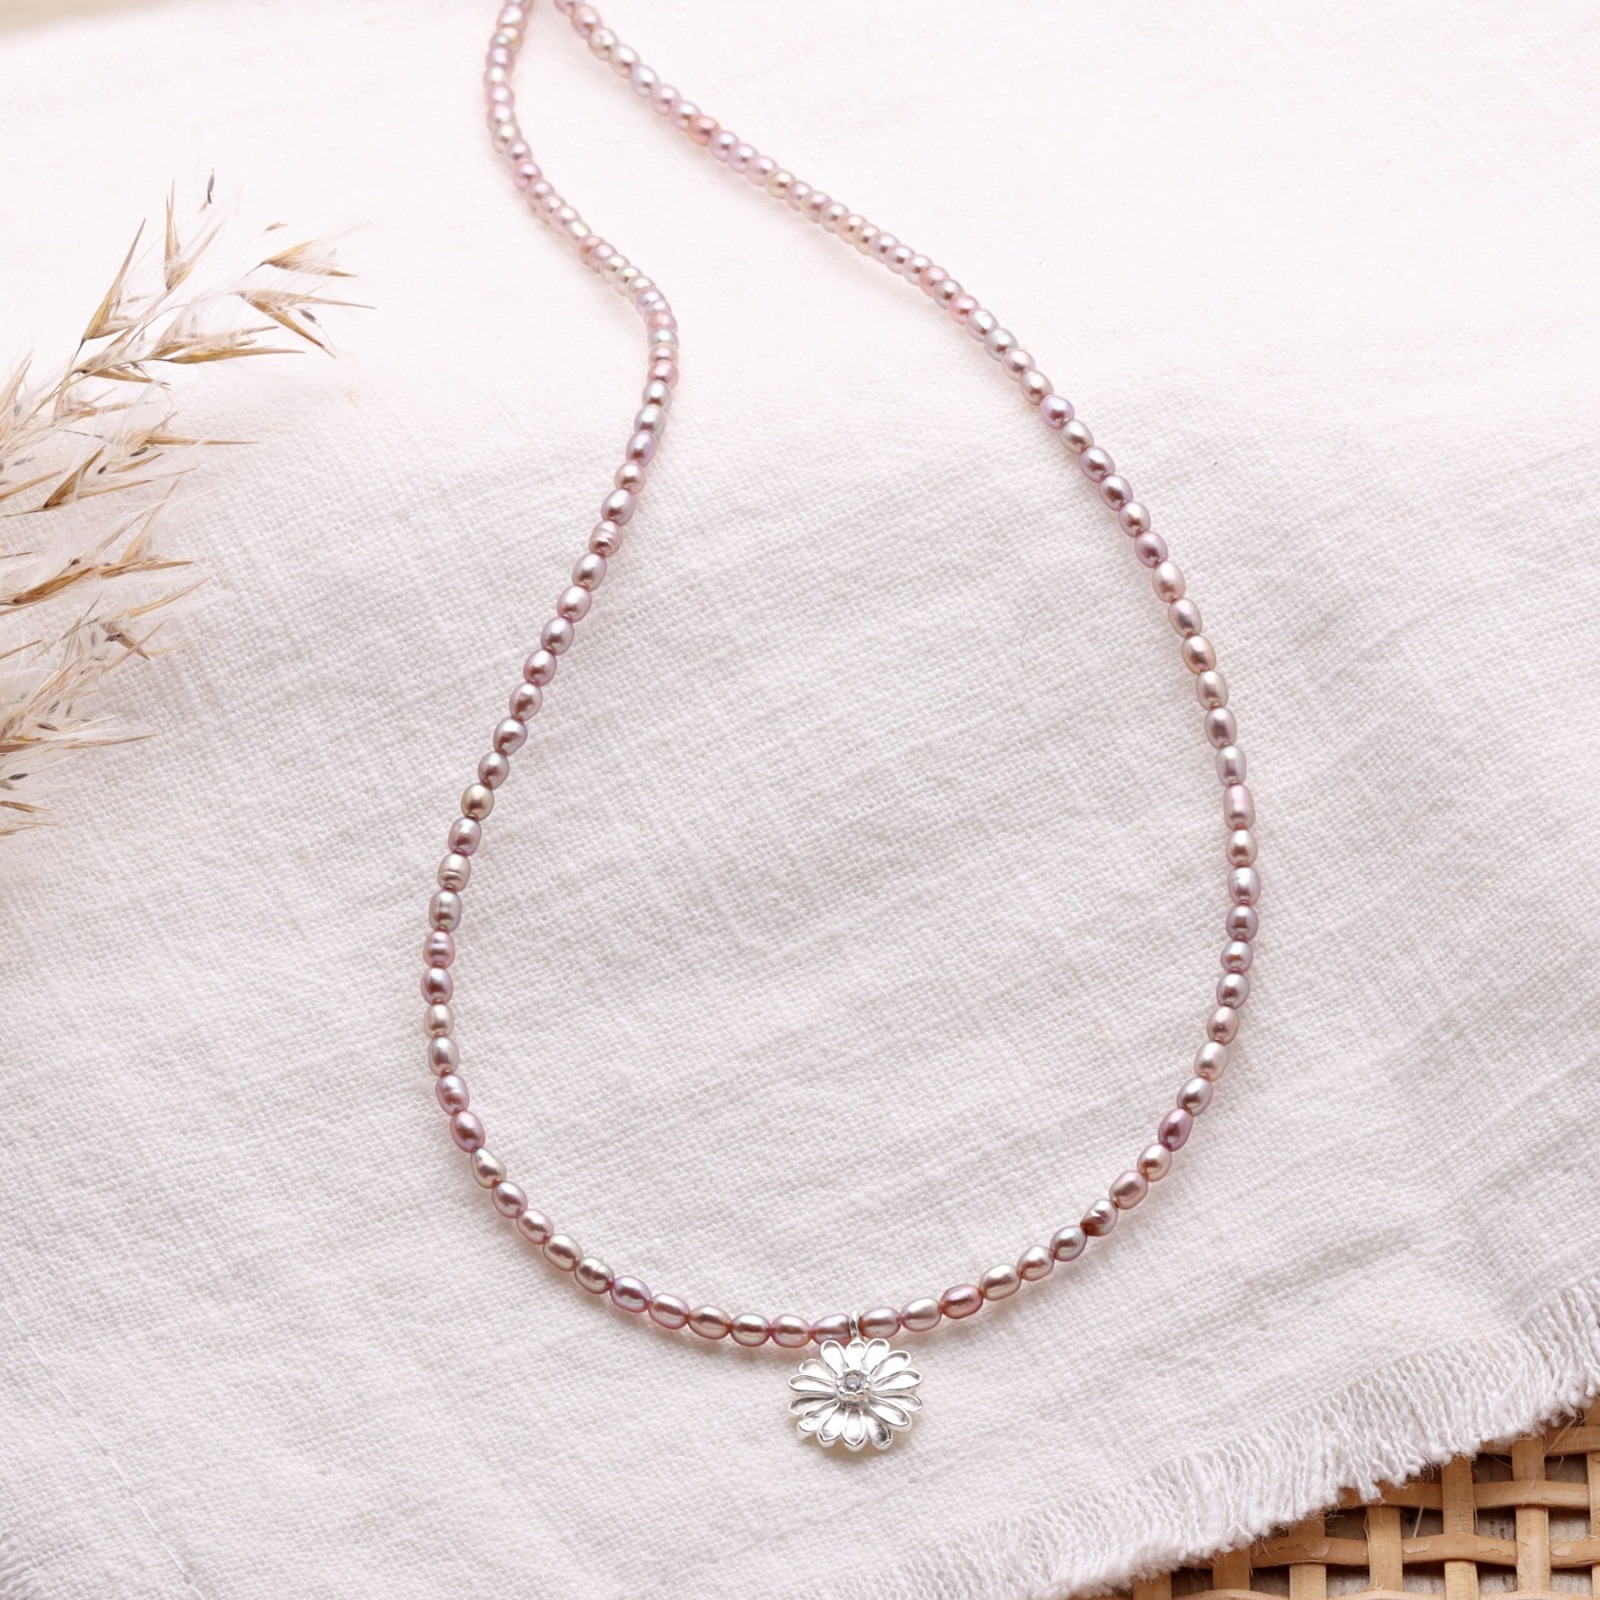 Perlenkette rosè aus echten Süßwasser-Perlen mit kleinem Anhänger Blüte -  Filigrane Perlenkette mit Anhänger Blüte | Online Shop | KARYSMA